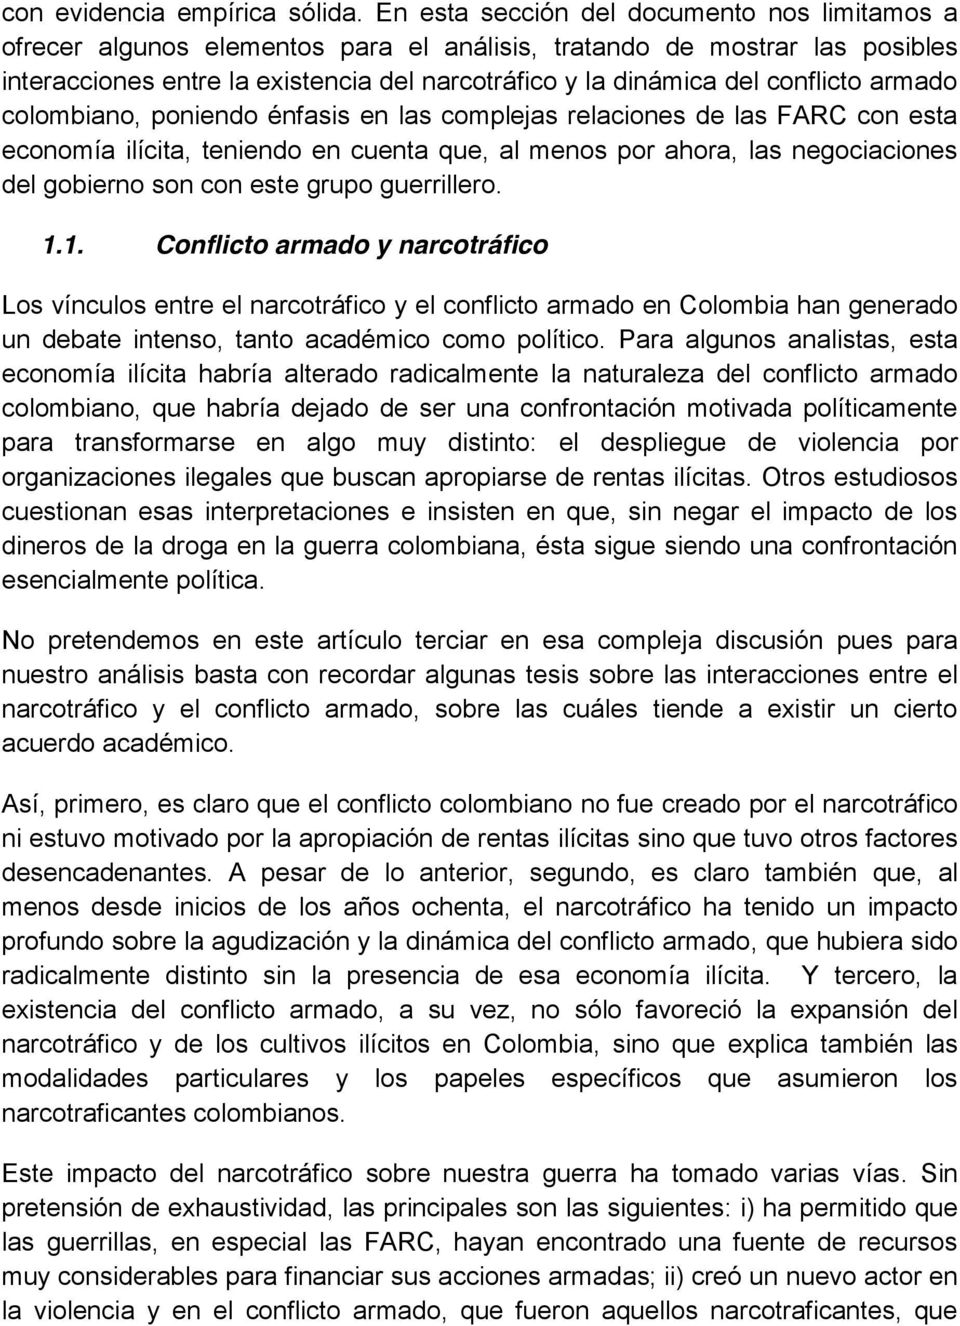 conflicto armado colombiano, poniendo énfasis en las complejas relaciones de las FARC con esta economía ilícita, teniendo en cuenta que, al menos por ahora, las negociaciones del gobierno son con